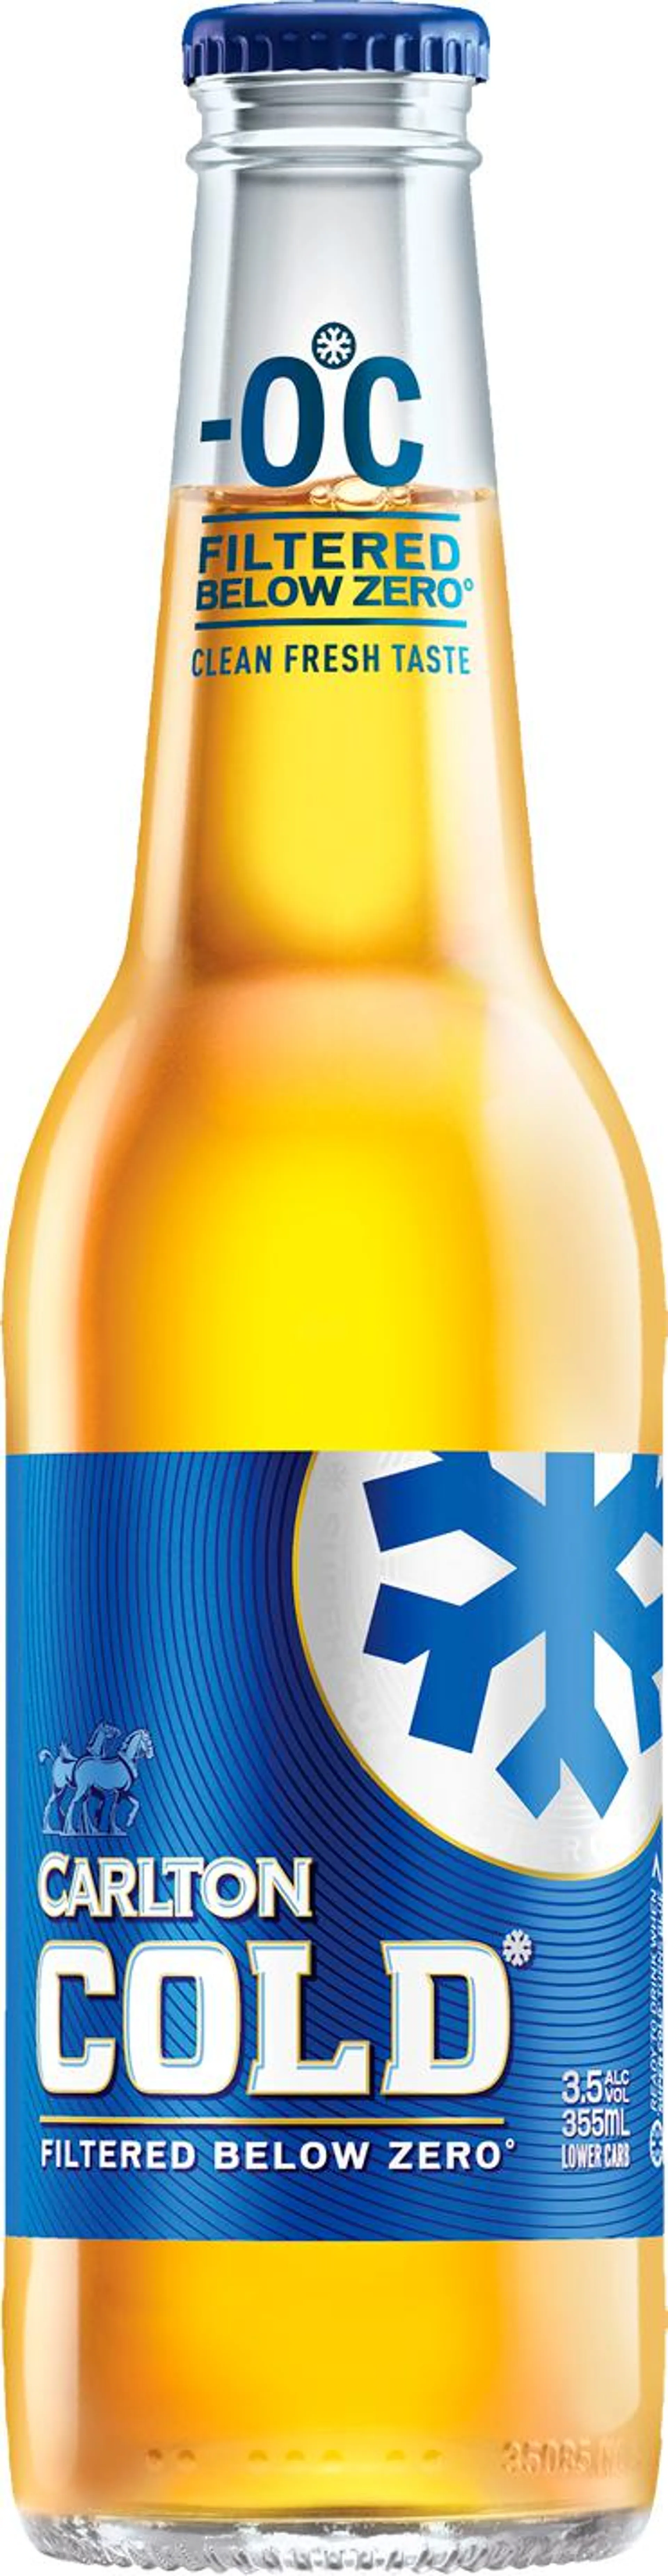 Carlton Cold 3.0% Bottle 24x355ML